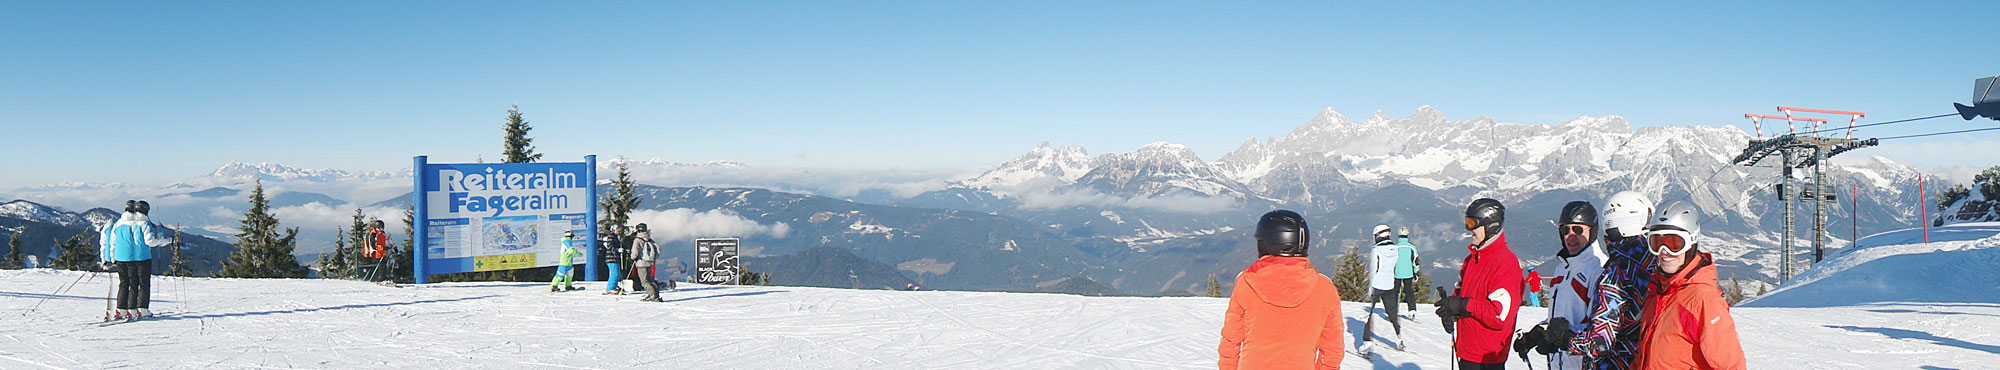 Skitag 2014 auf der Reiteralm